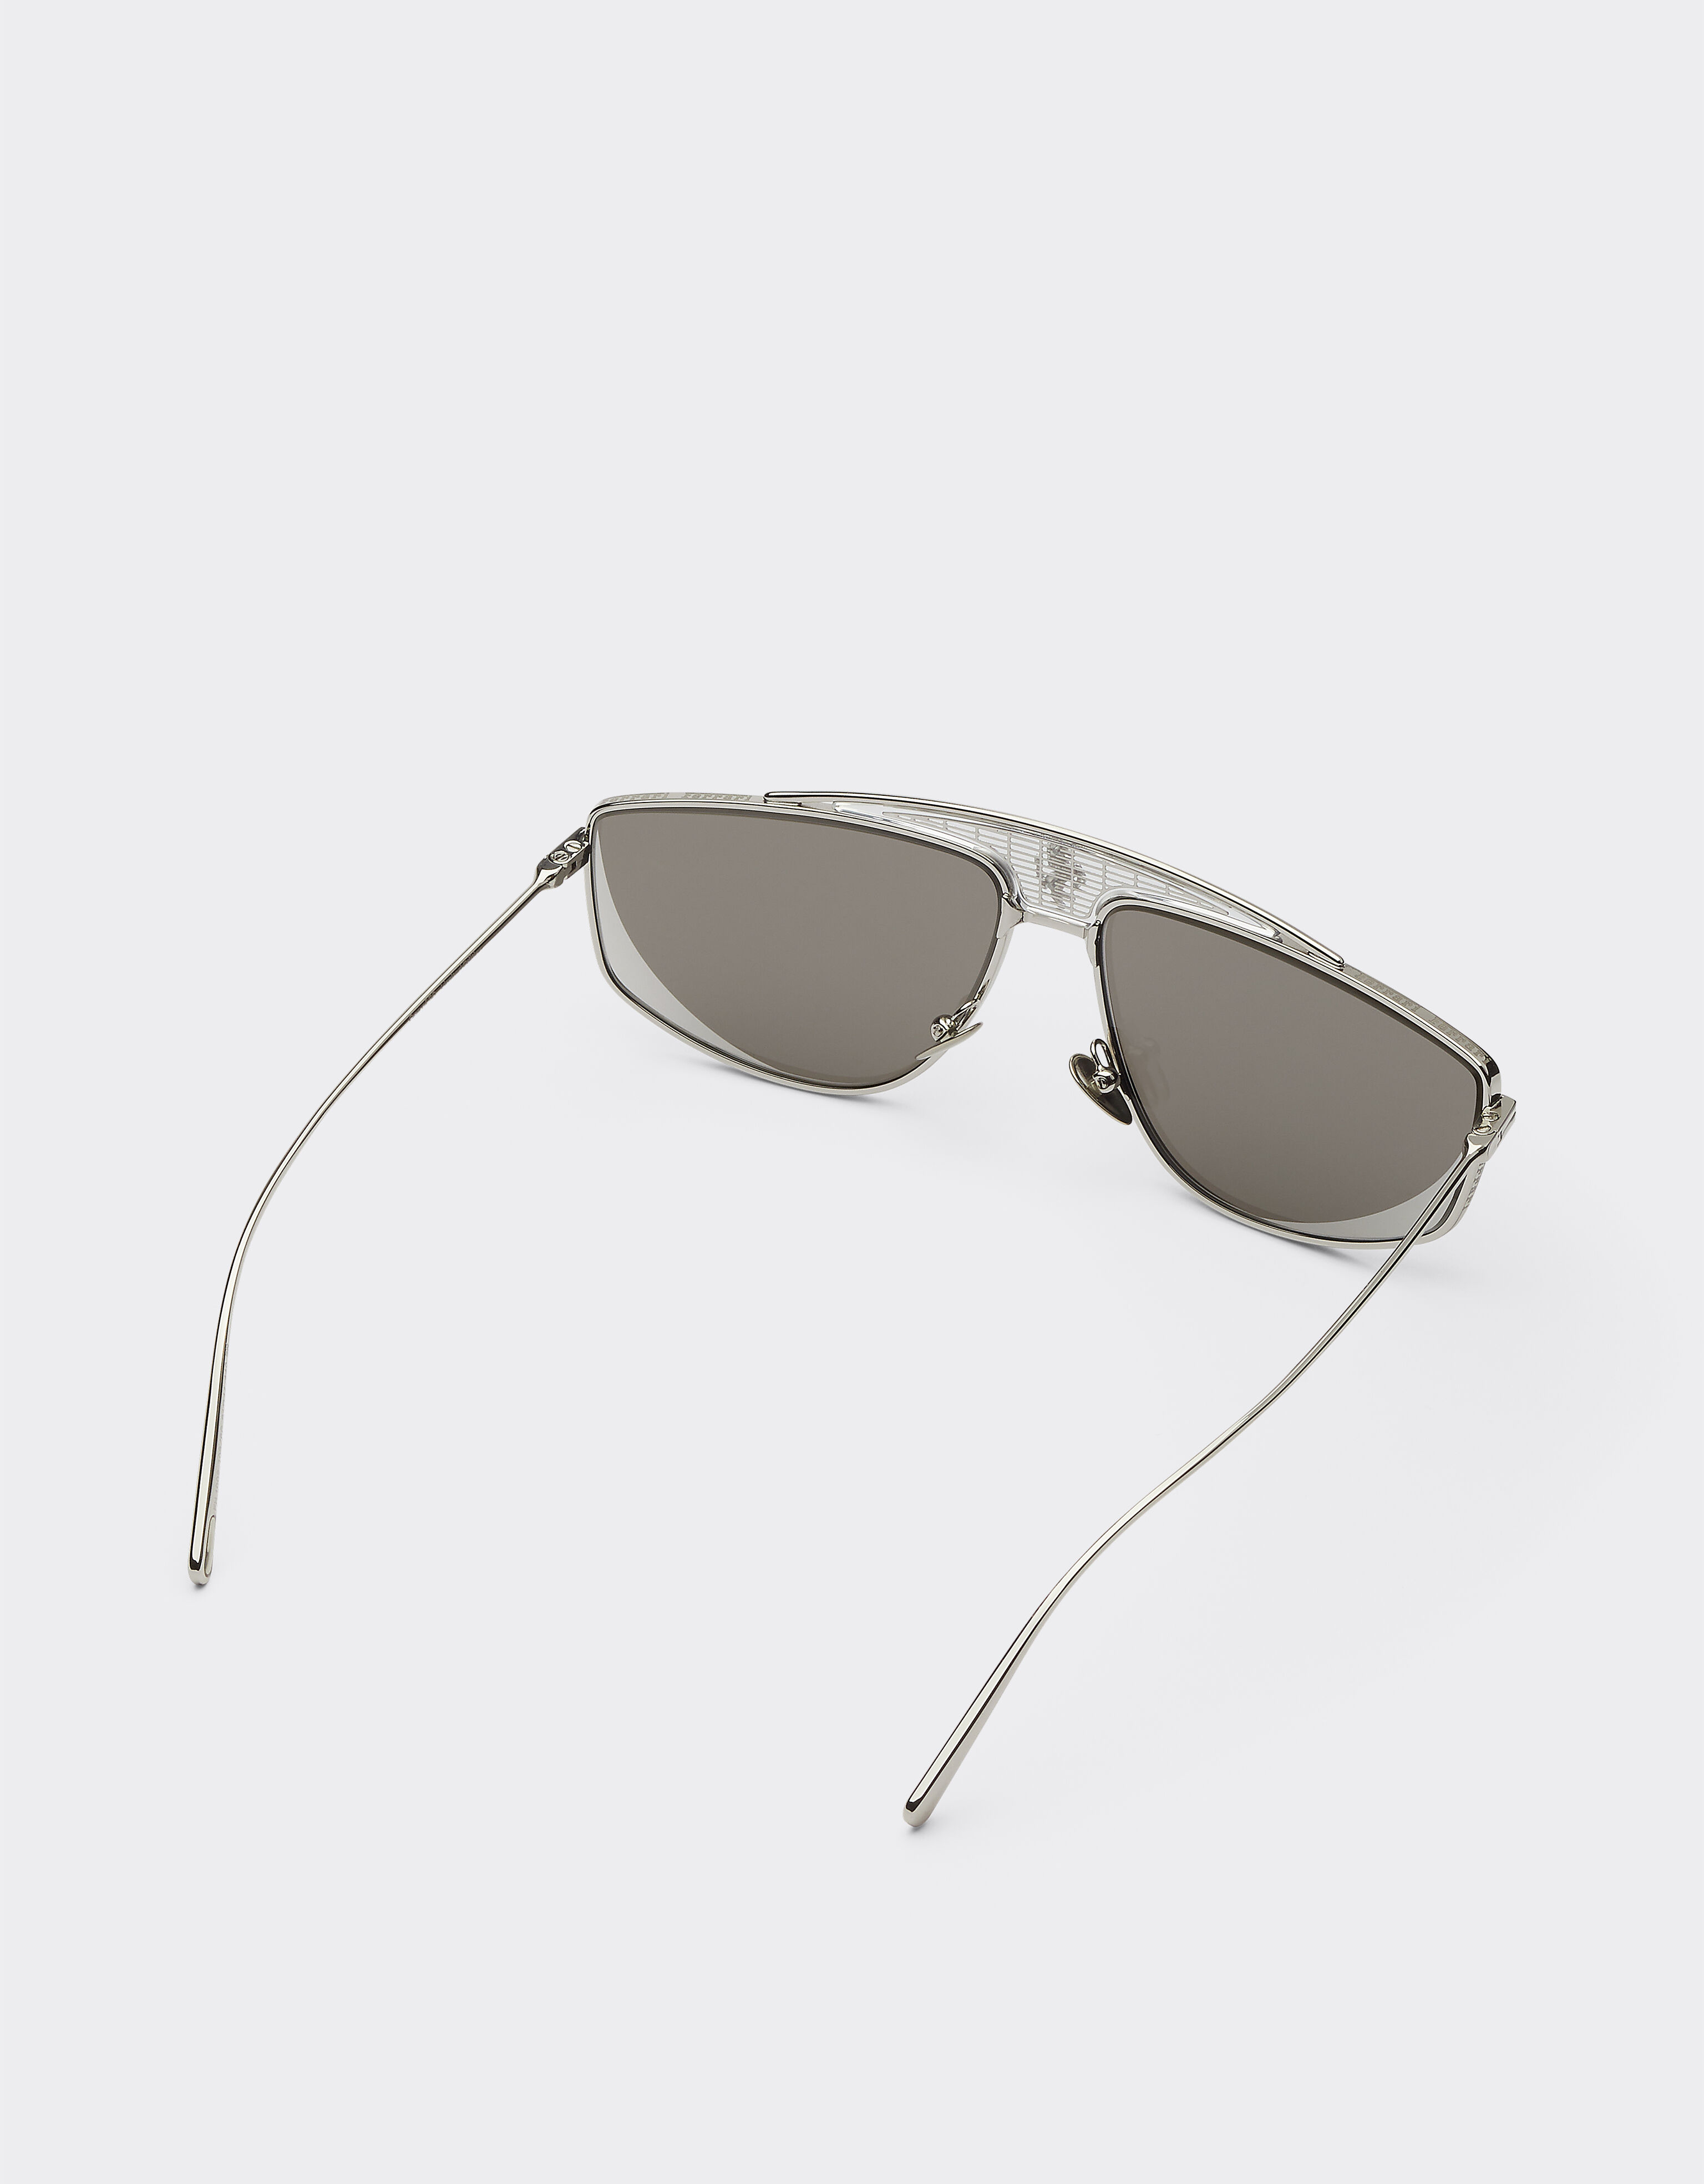 Ferrari Ferrari sunglasses with silver mirrored lenses Silver F0408f